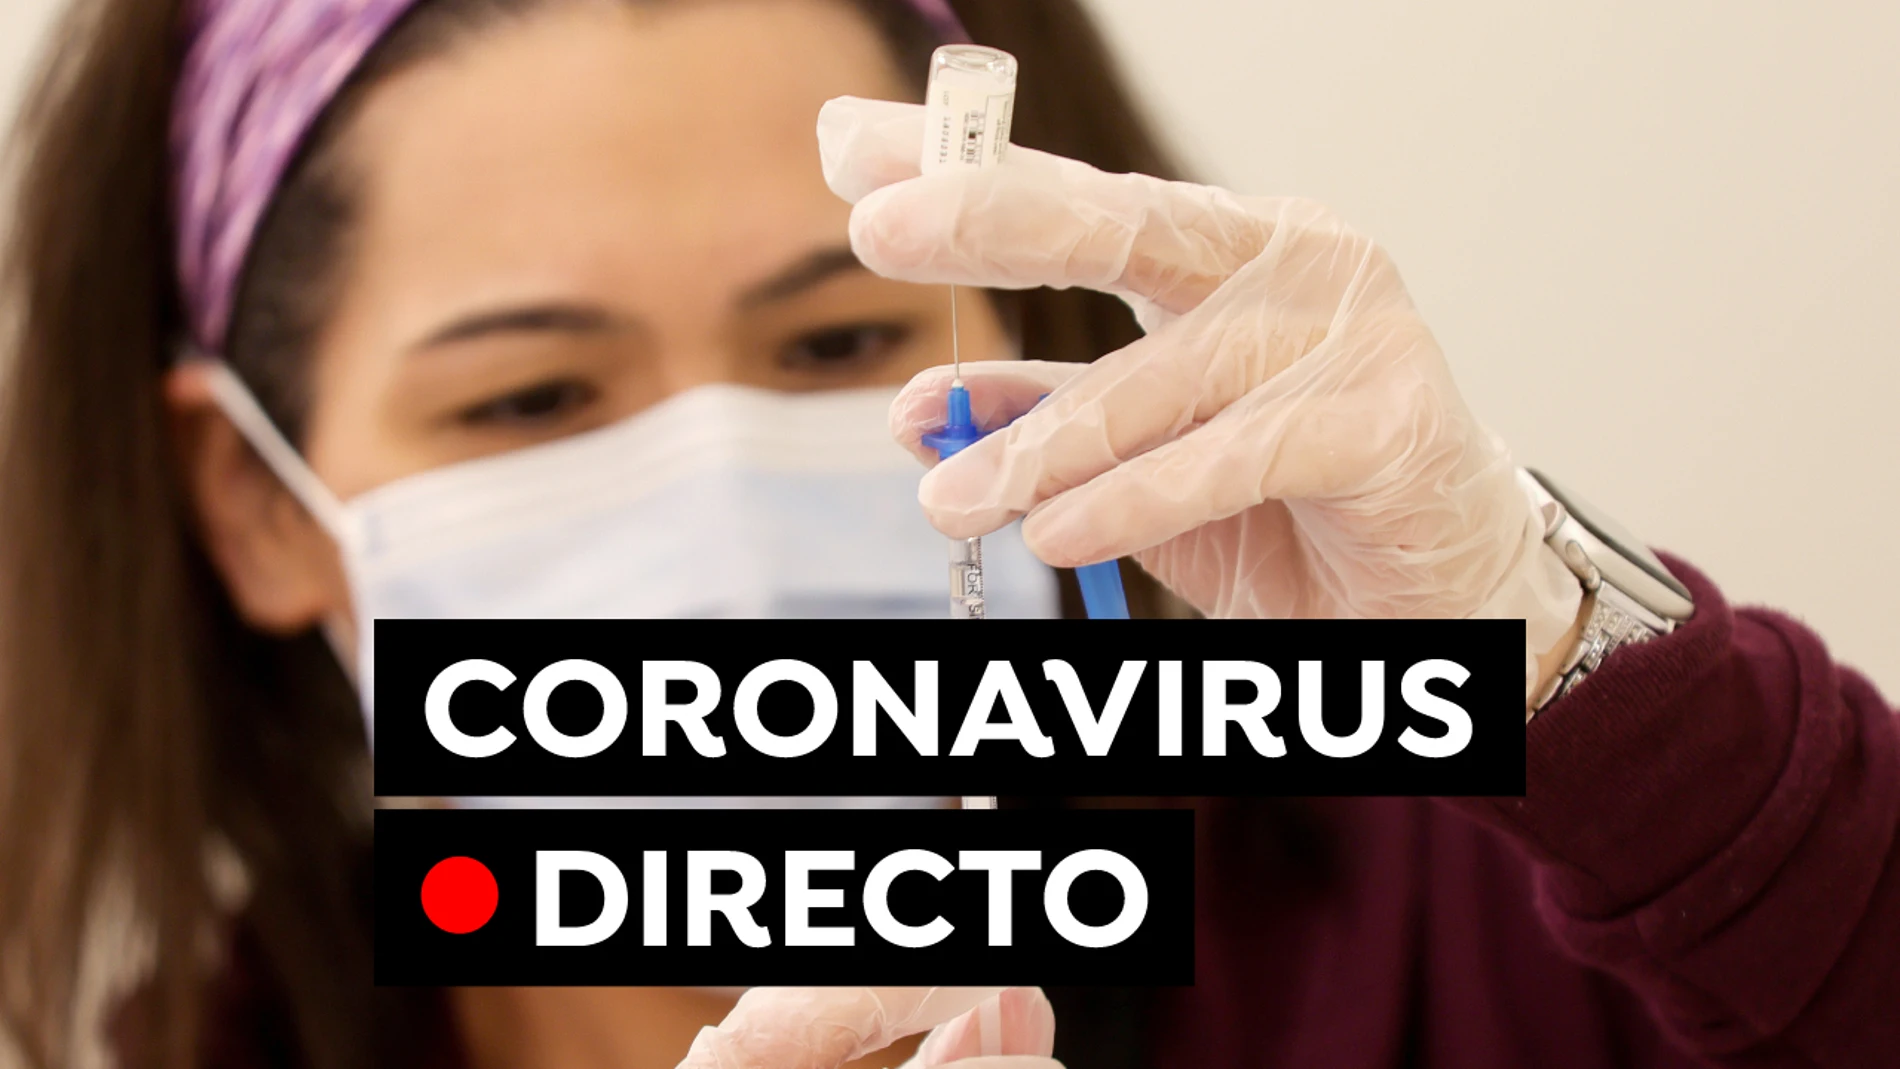 Coronavirus en España: Última hora de las vacunas, restricciones y contagios, en directo